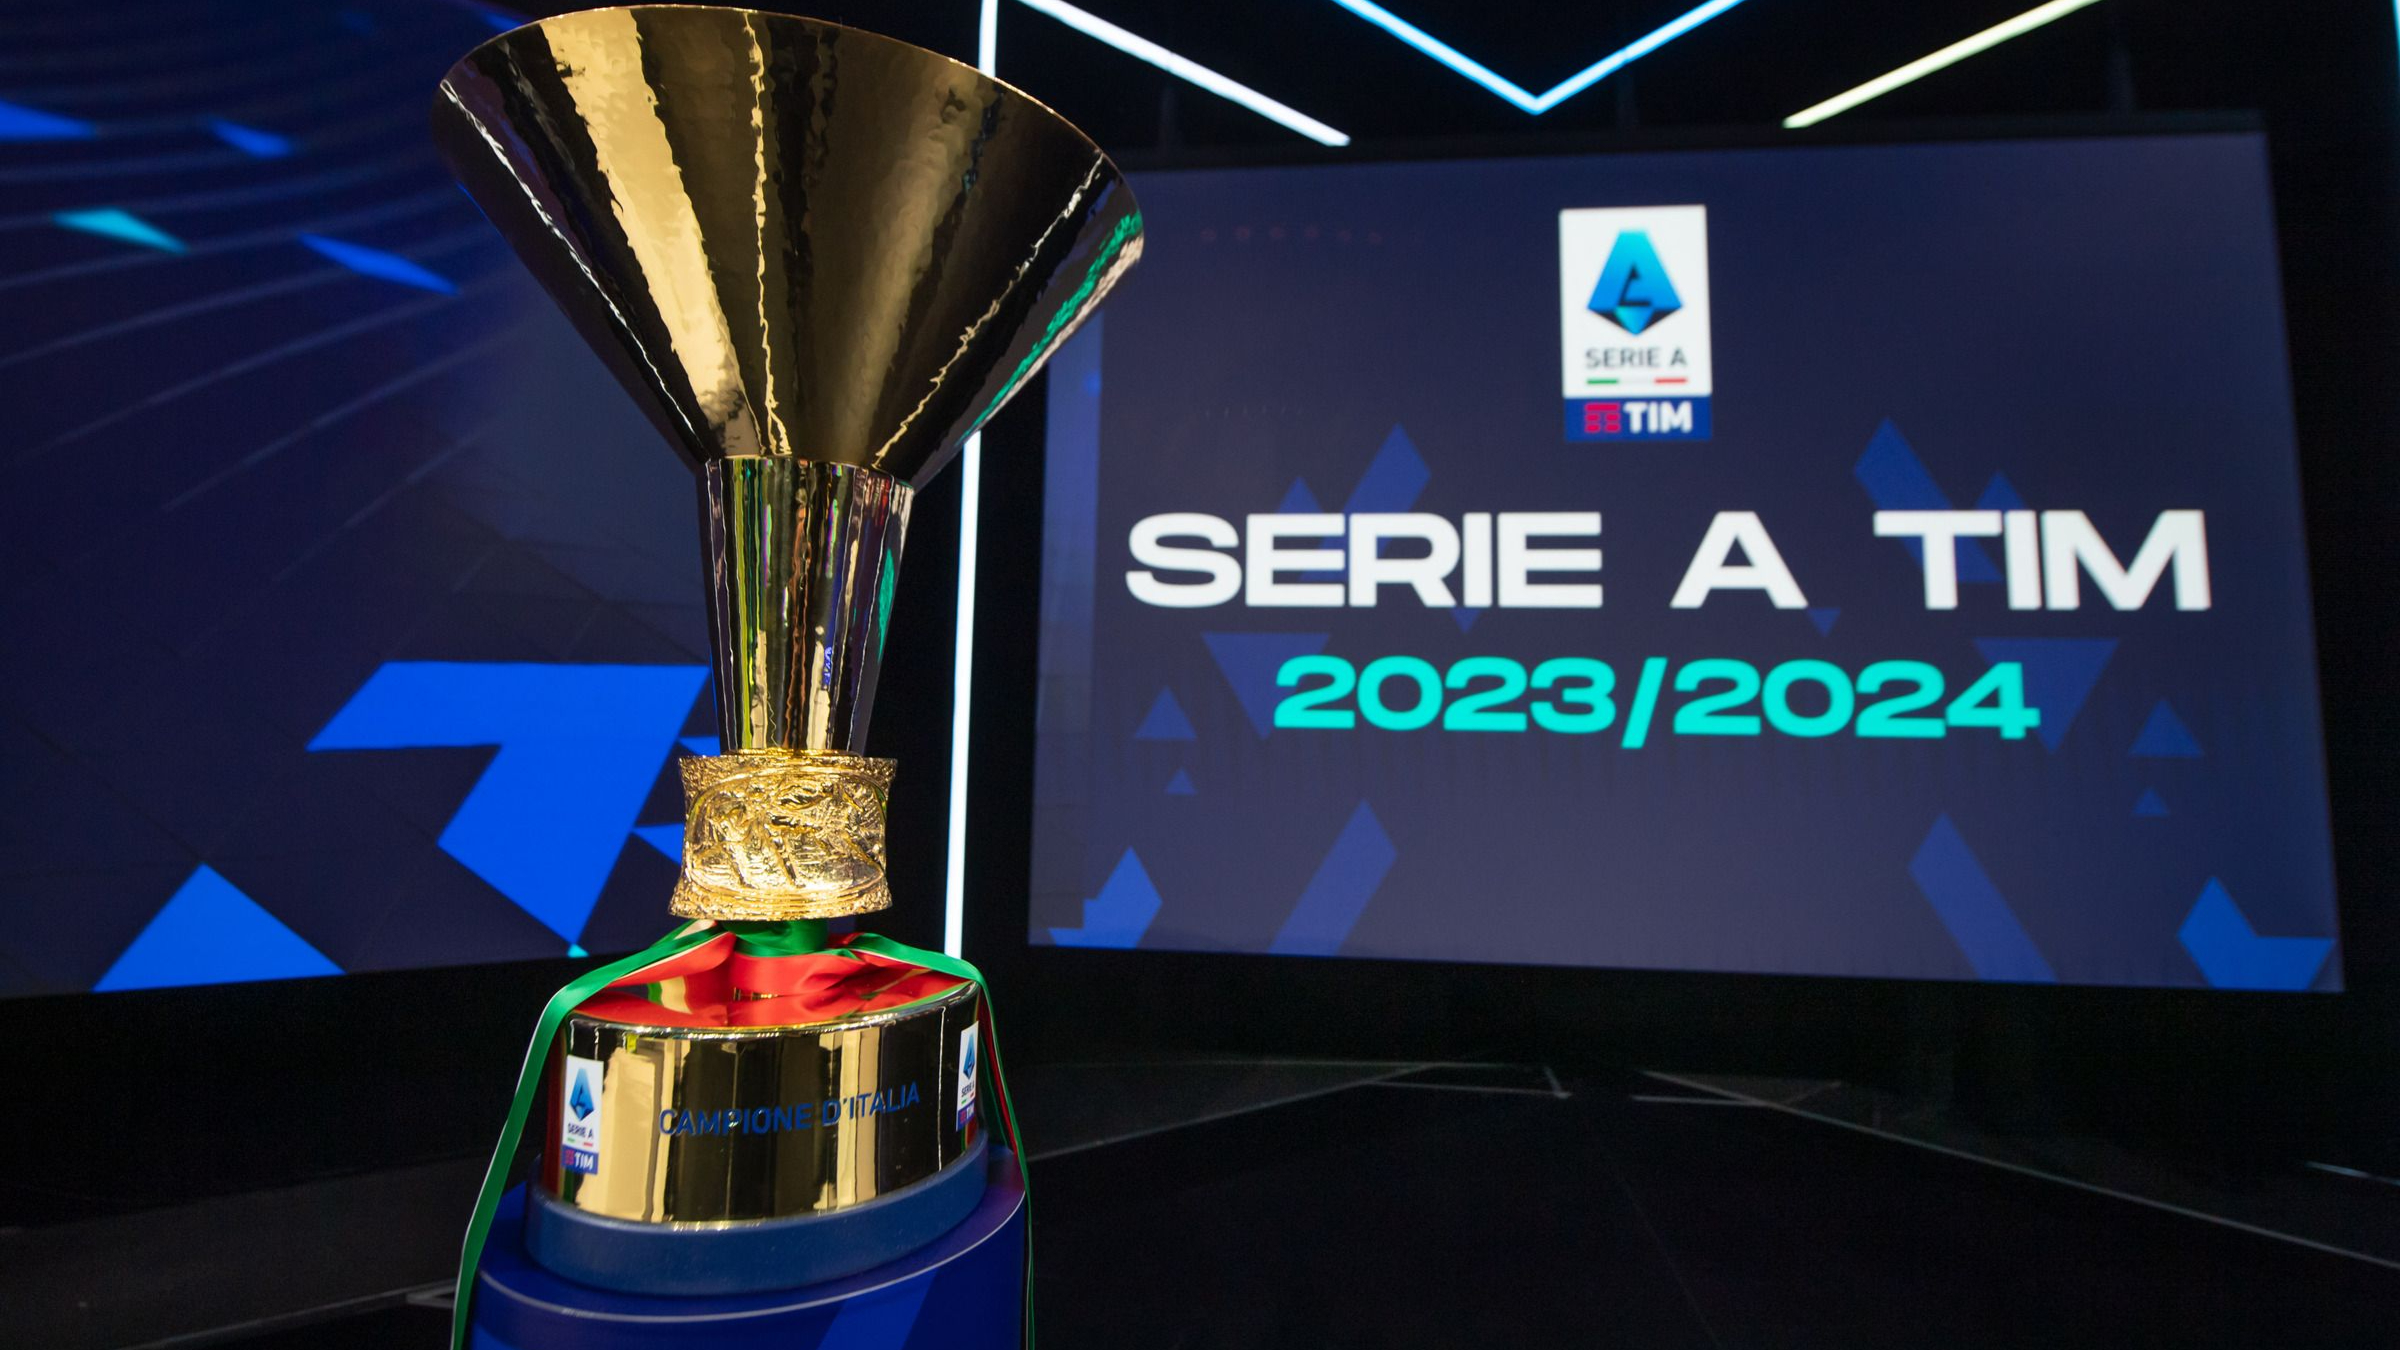 Le probabili formazioni della 29a giornata del campionato di Serie A